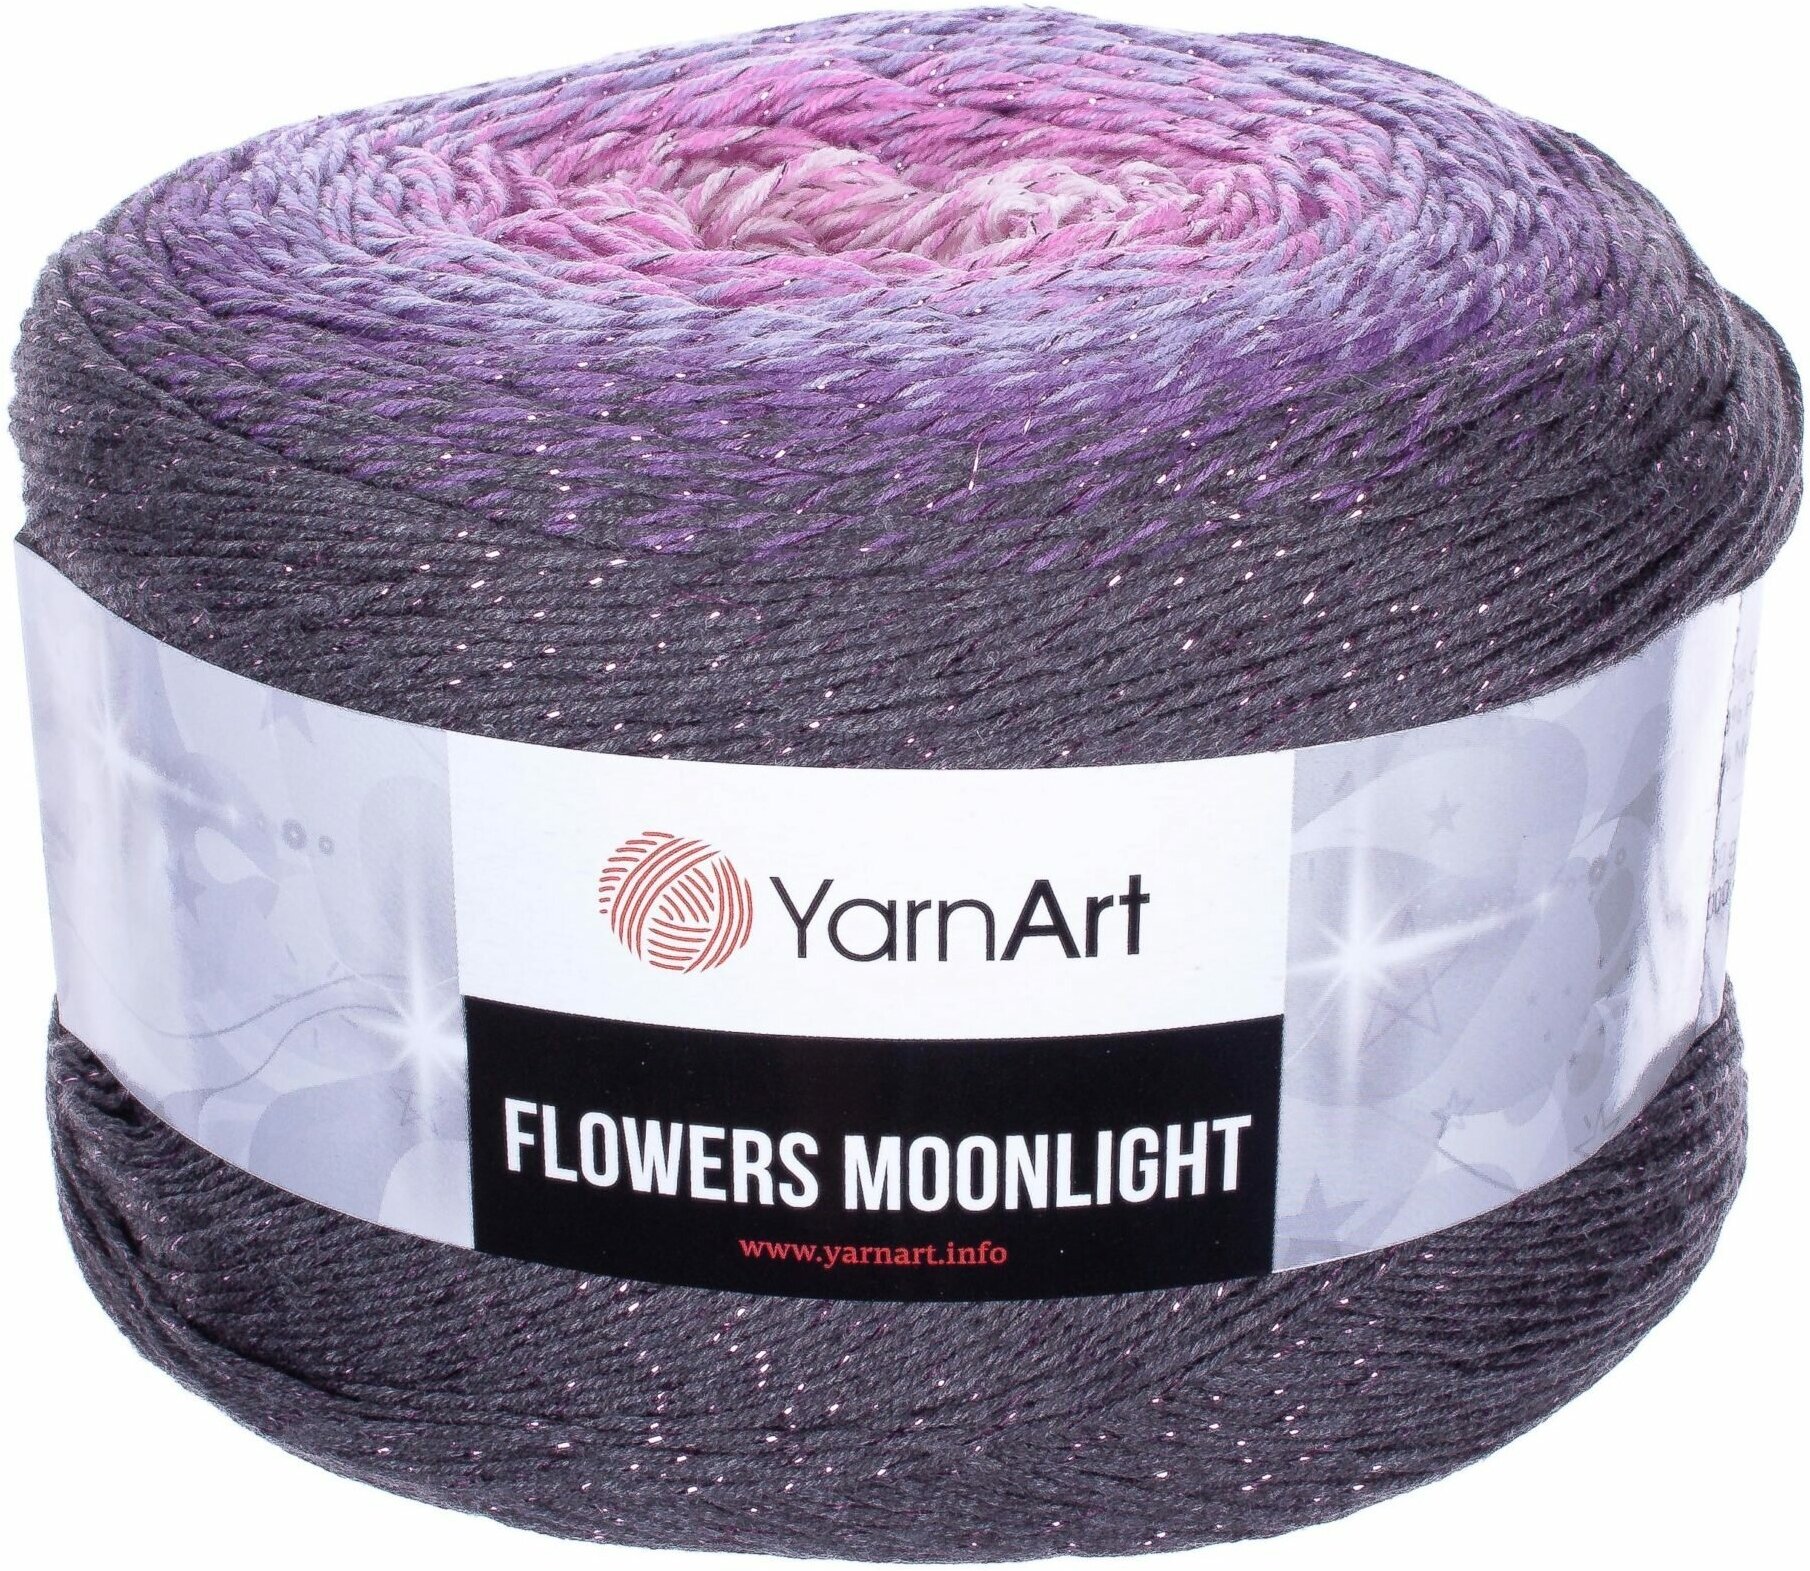 Пряжа YarnArt Flowers Moonlight темно серый-сирень-св. розовый (3276), 53%хлопок/43%акрил/4%металлик, 1000м, 260г, 1шт